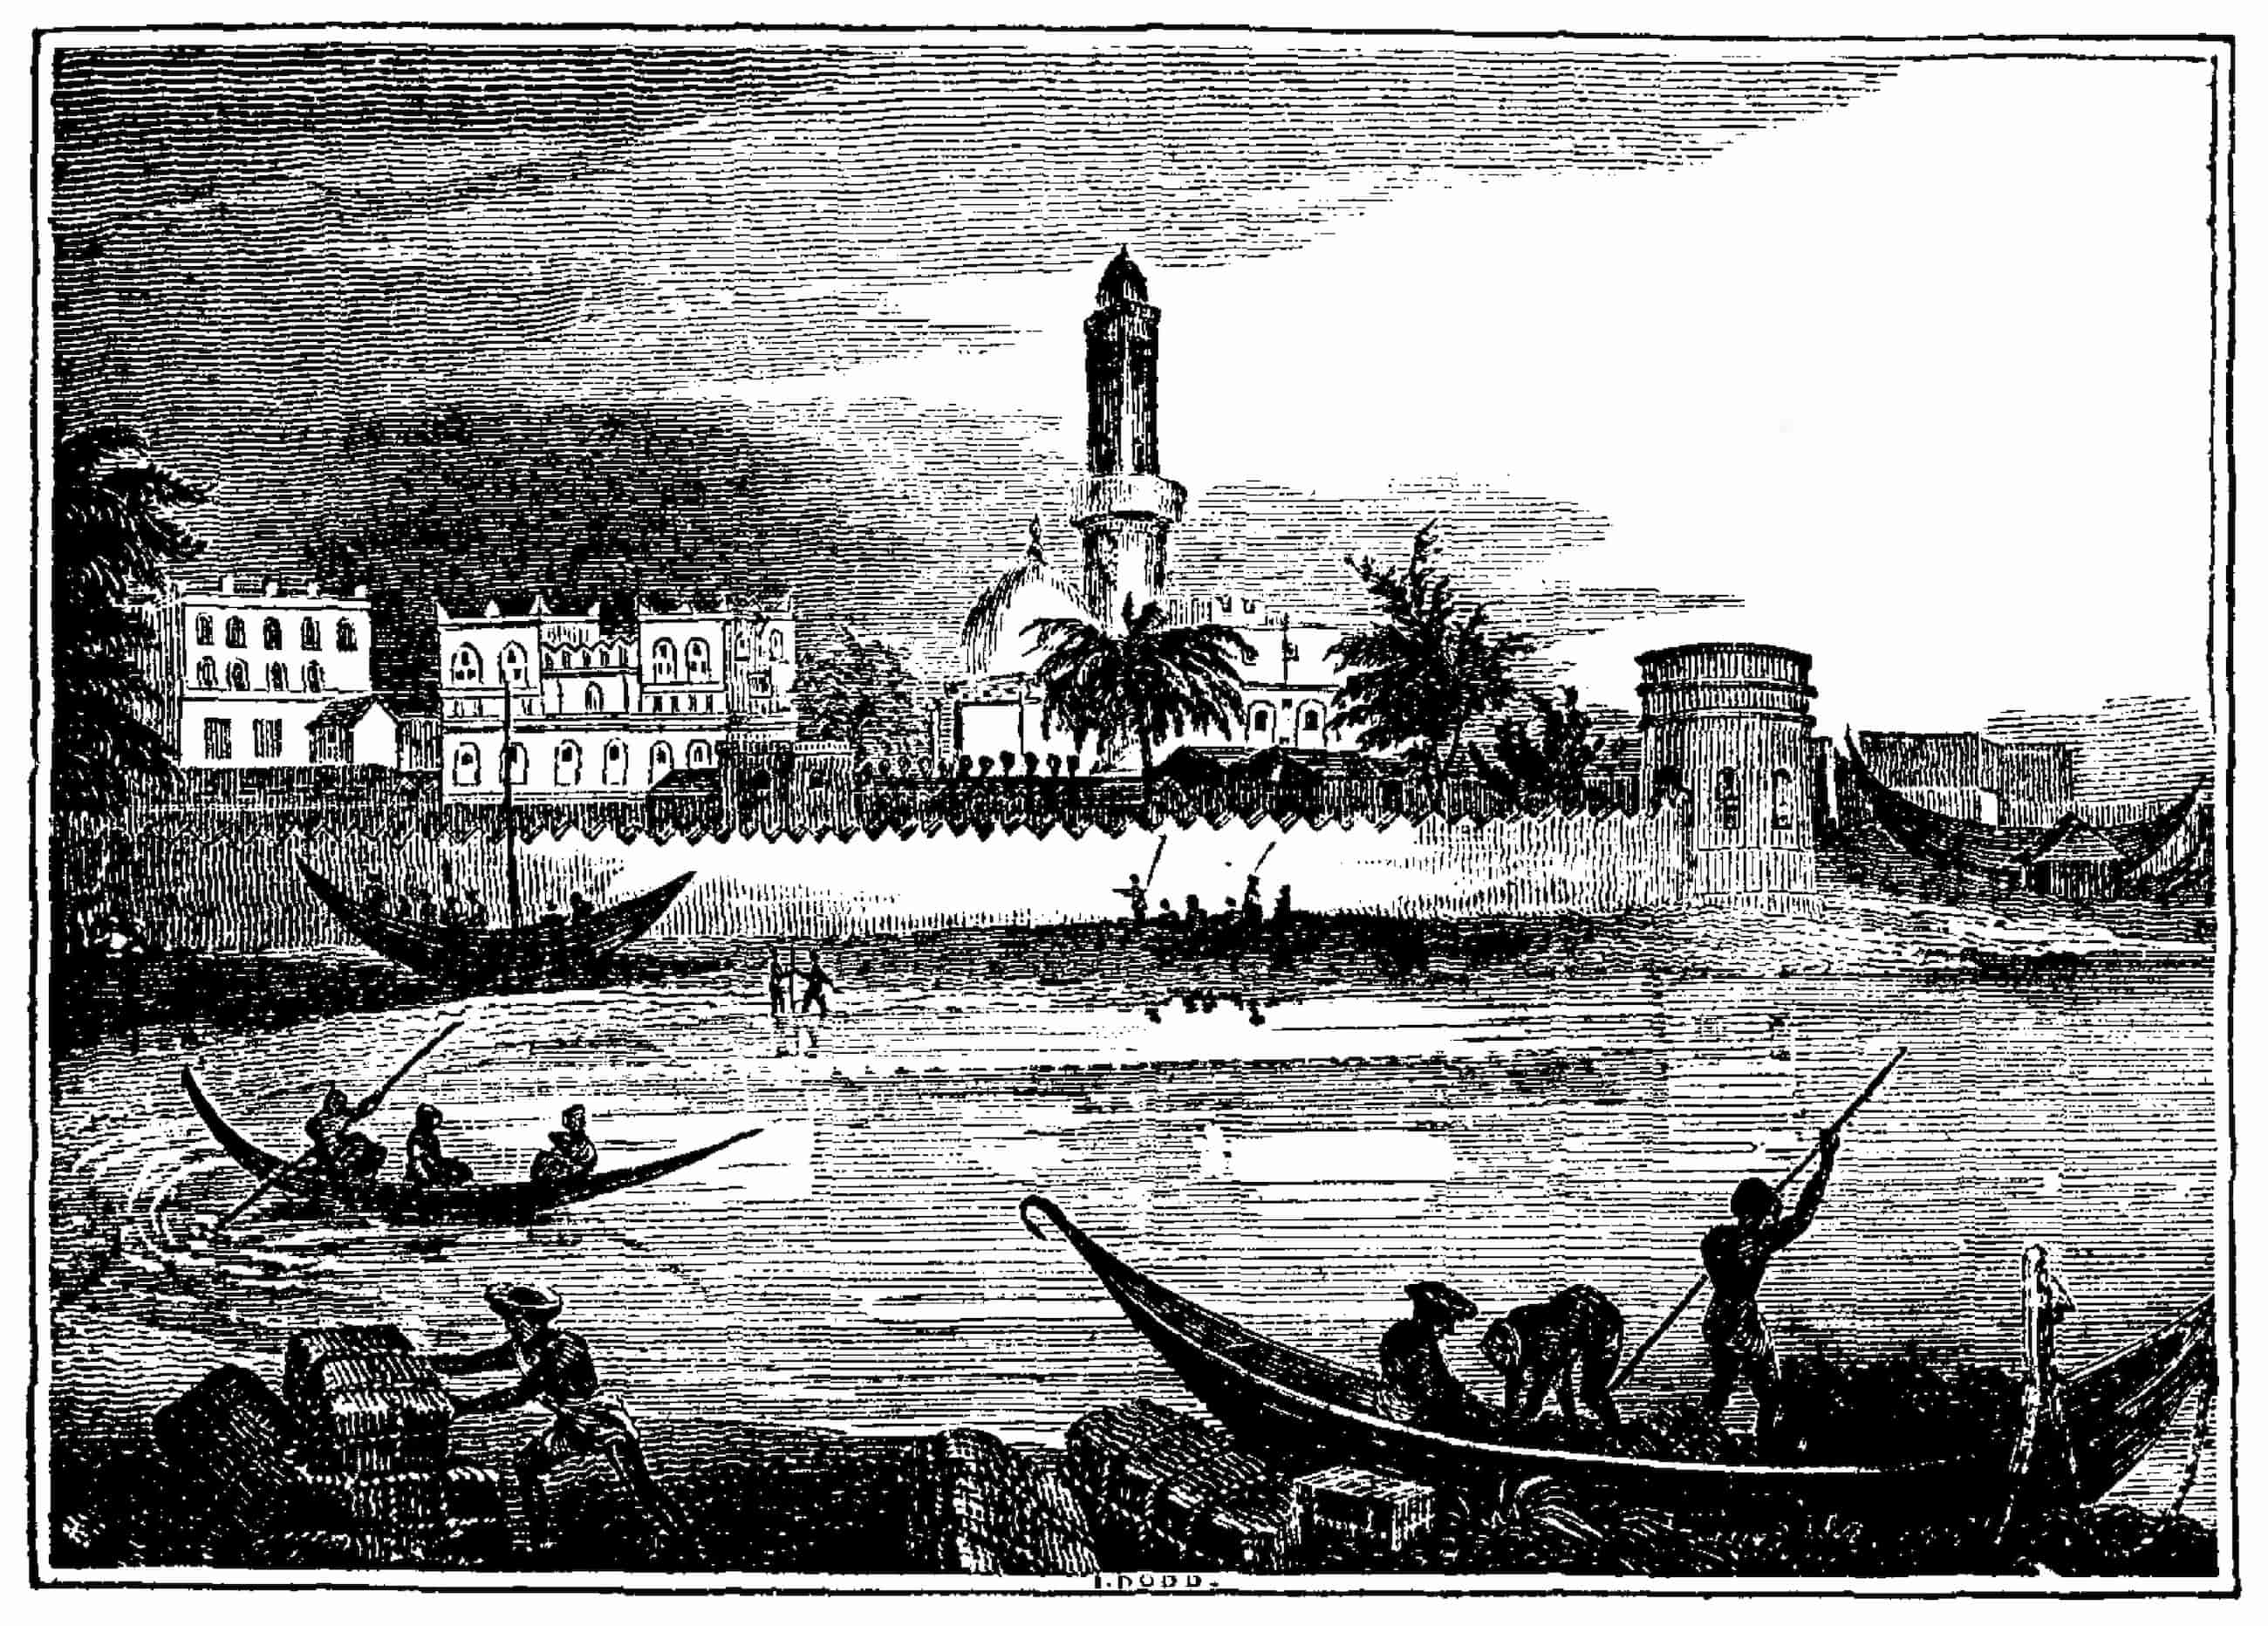 Một minh họa về cảng Mocha, những chiếc thuyền nhỏ di chuyển trong nước trước một khu định cư có tường bao quanh.